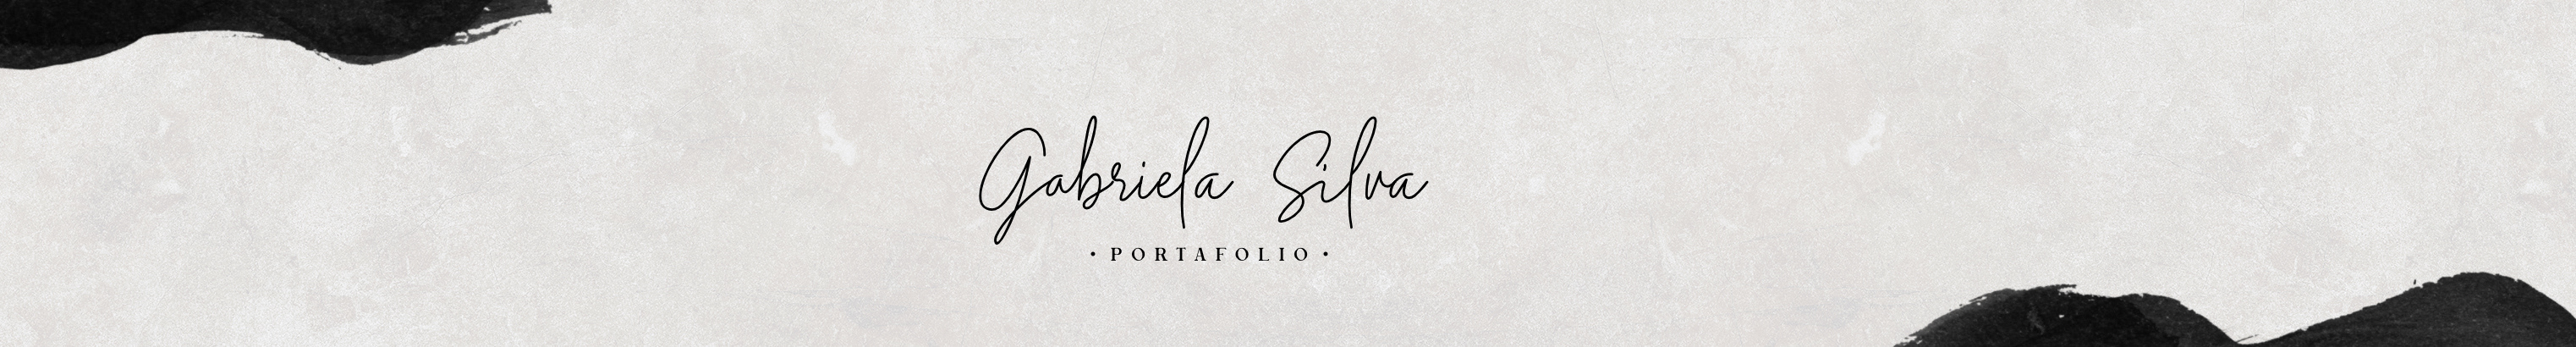 Banner de perfil de Gabriela Silva Villanueva